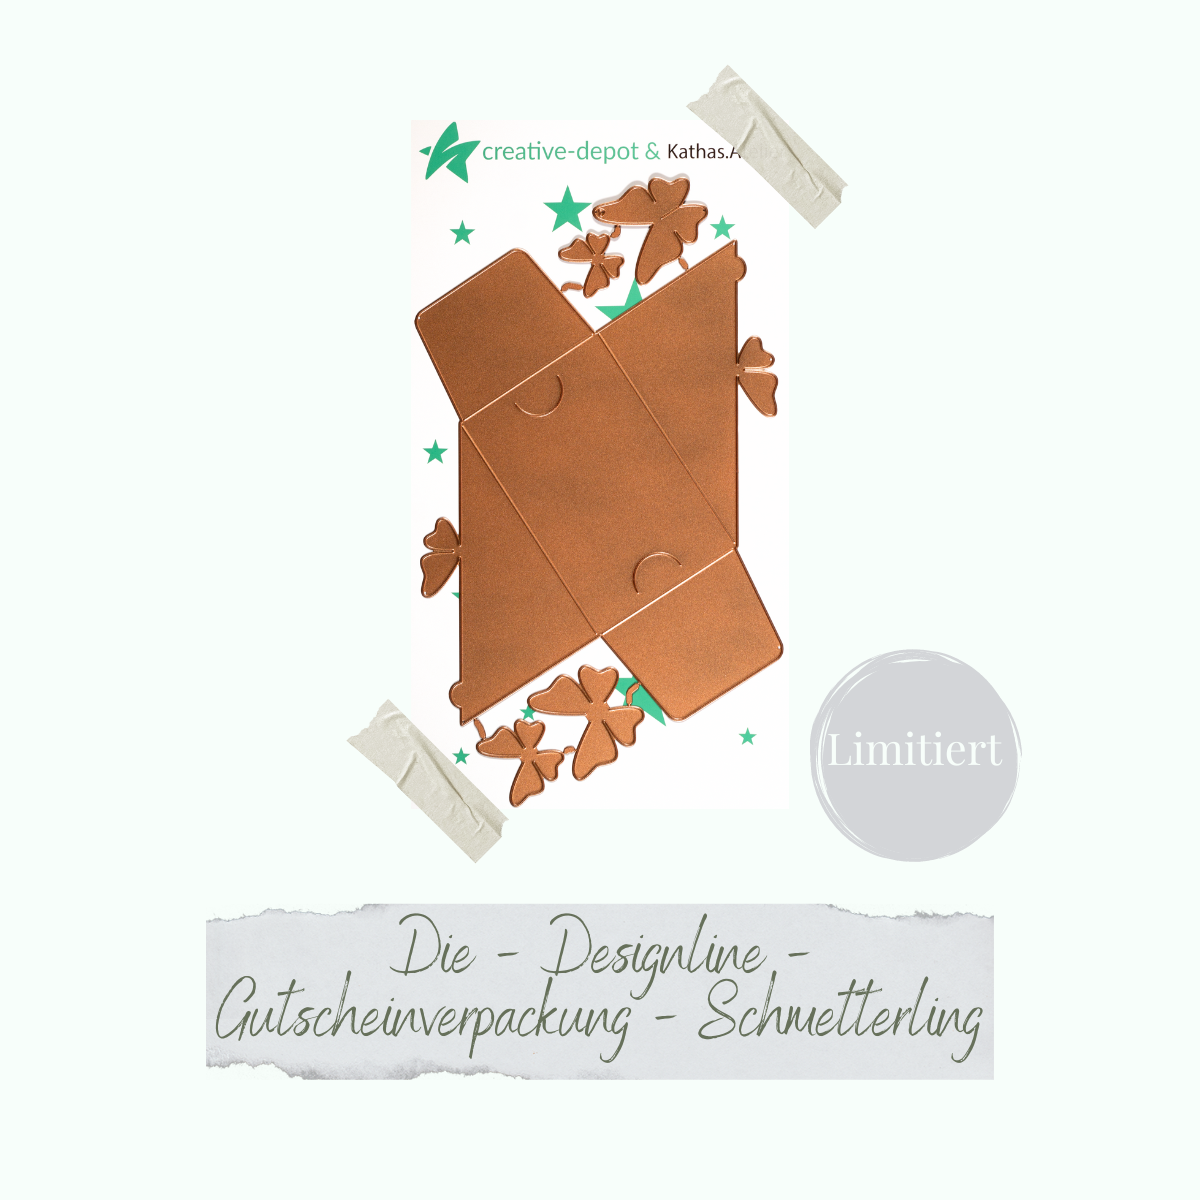 Die - Designline - Gutscheinverpackung - Schmetterling